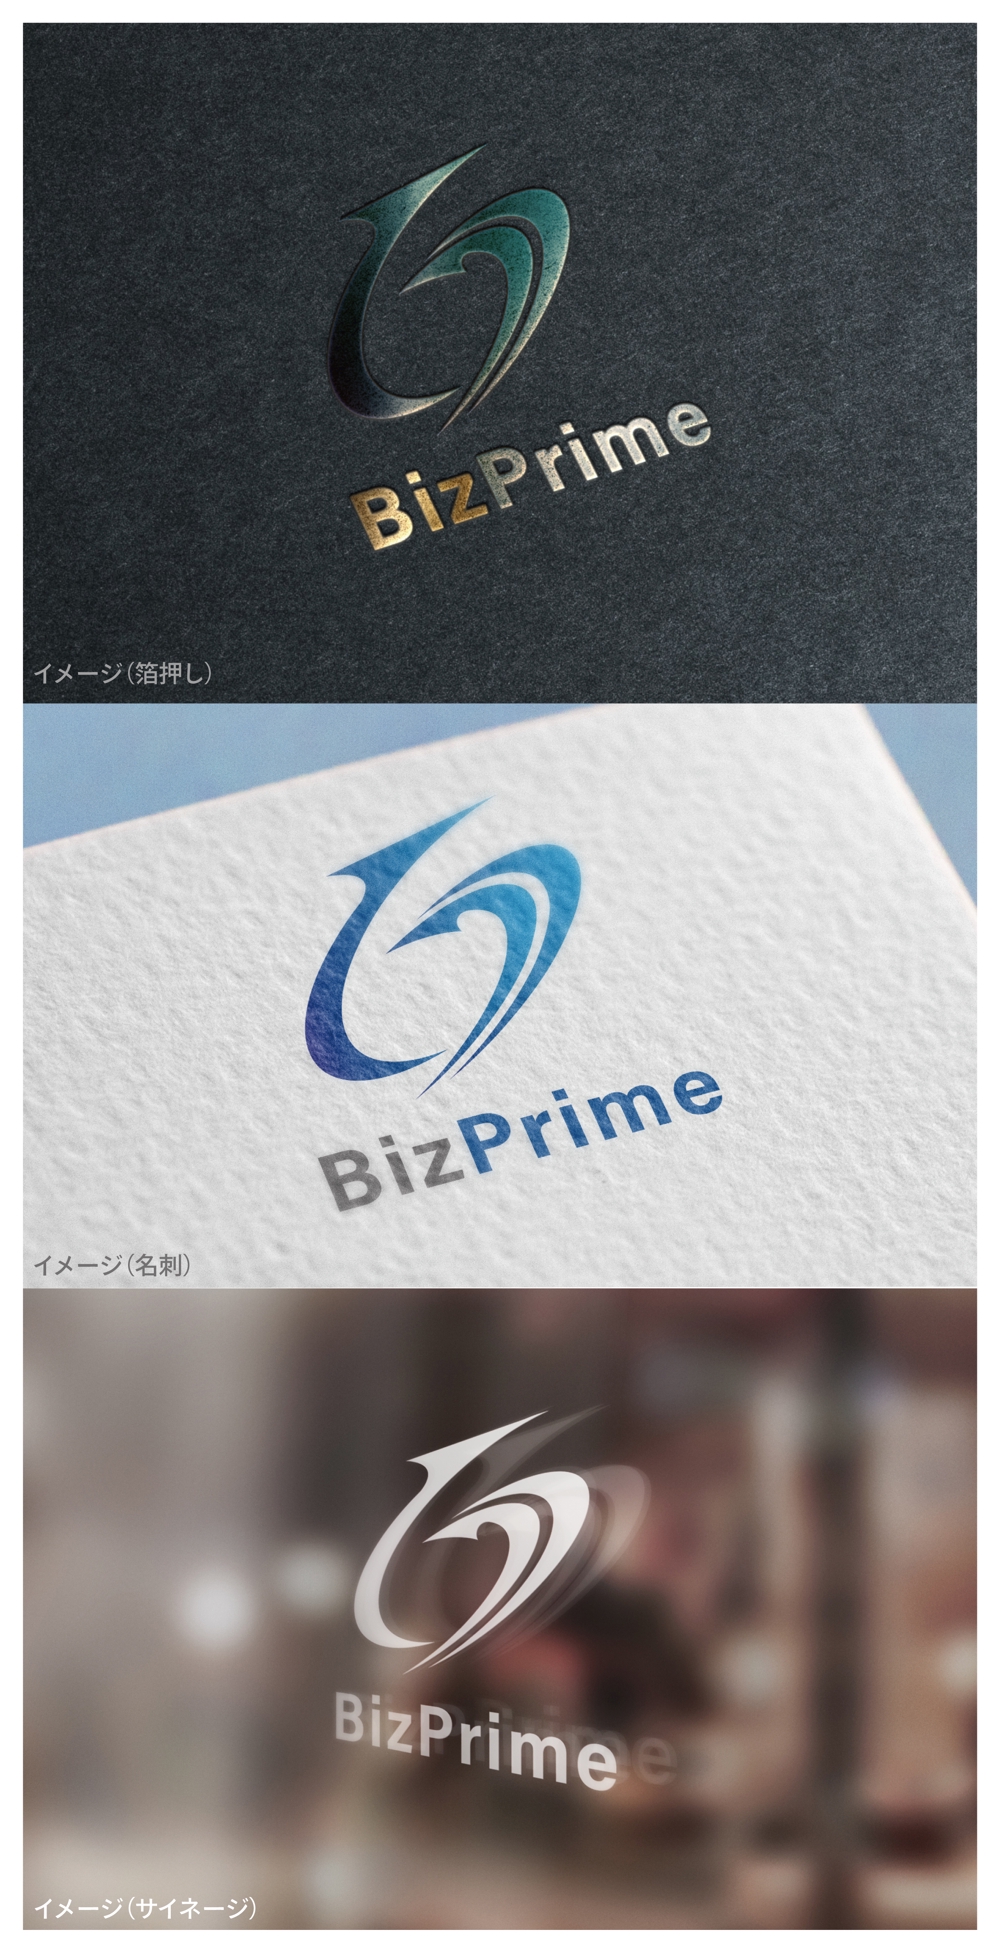 BizPrime_logo02_01.jpg